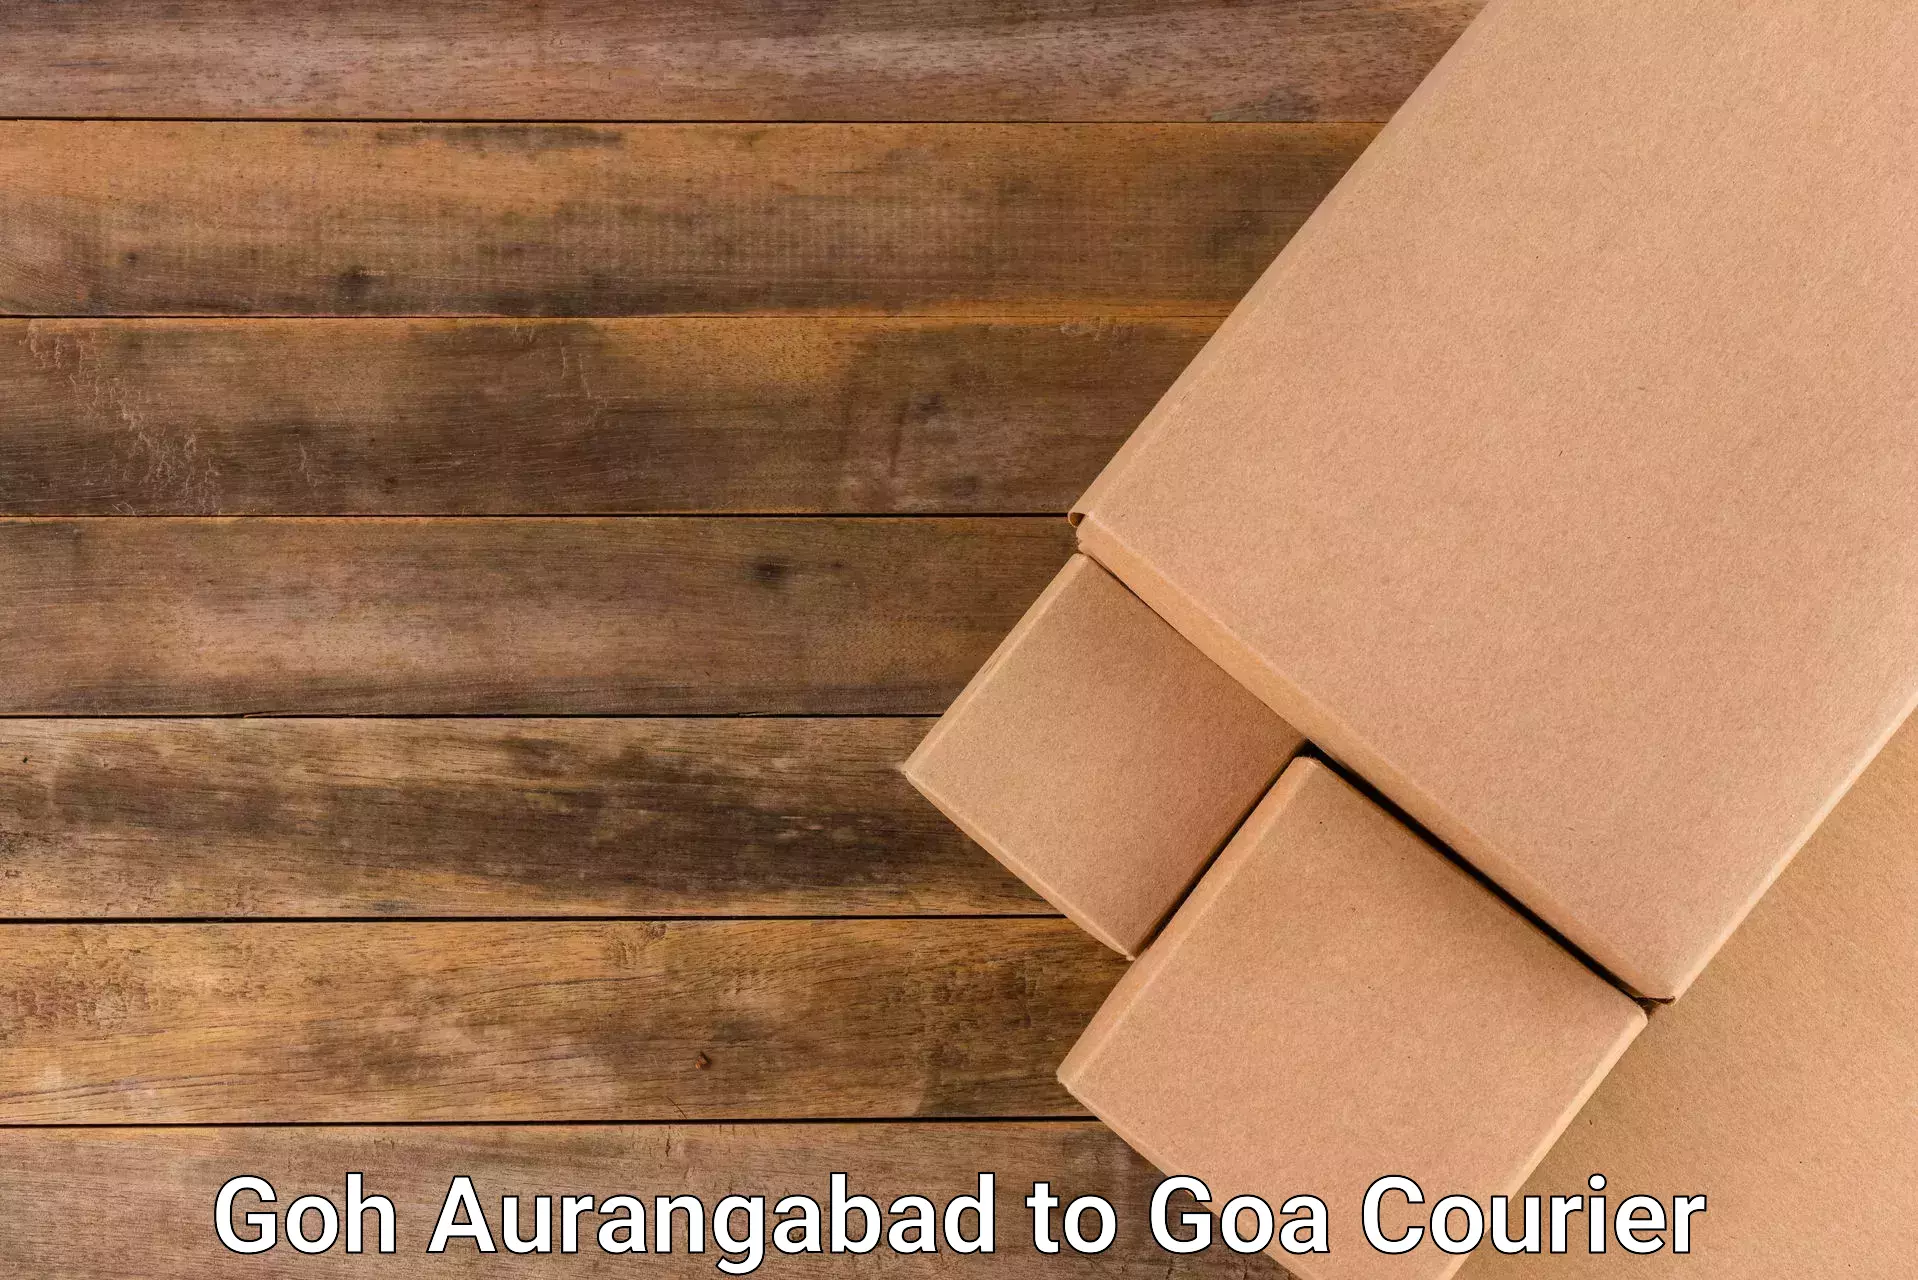 Easy access courier services Goh Aurangabad to Bicholim